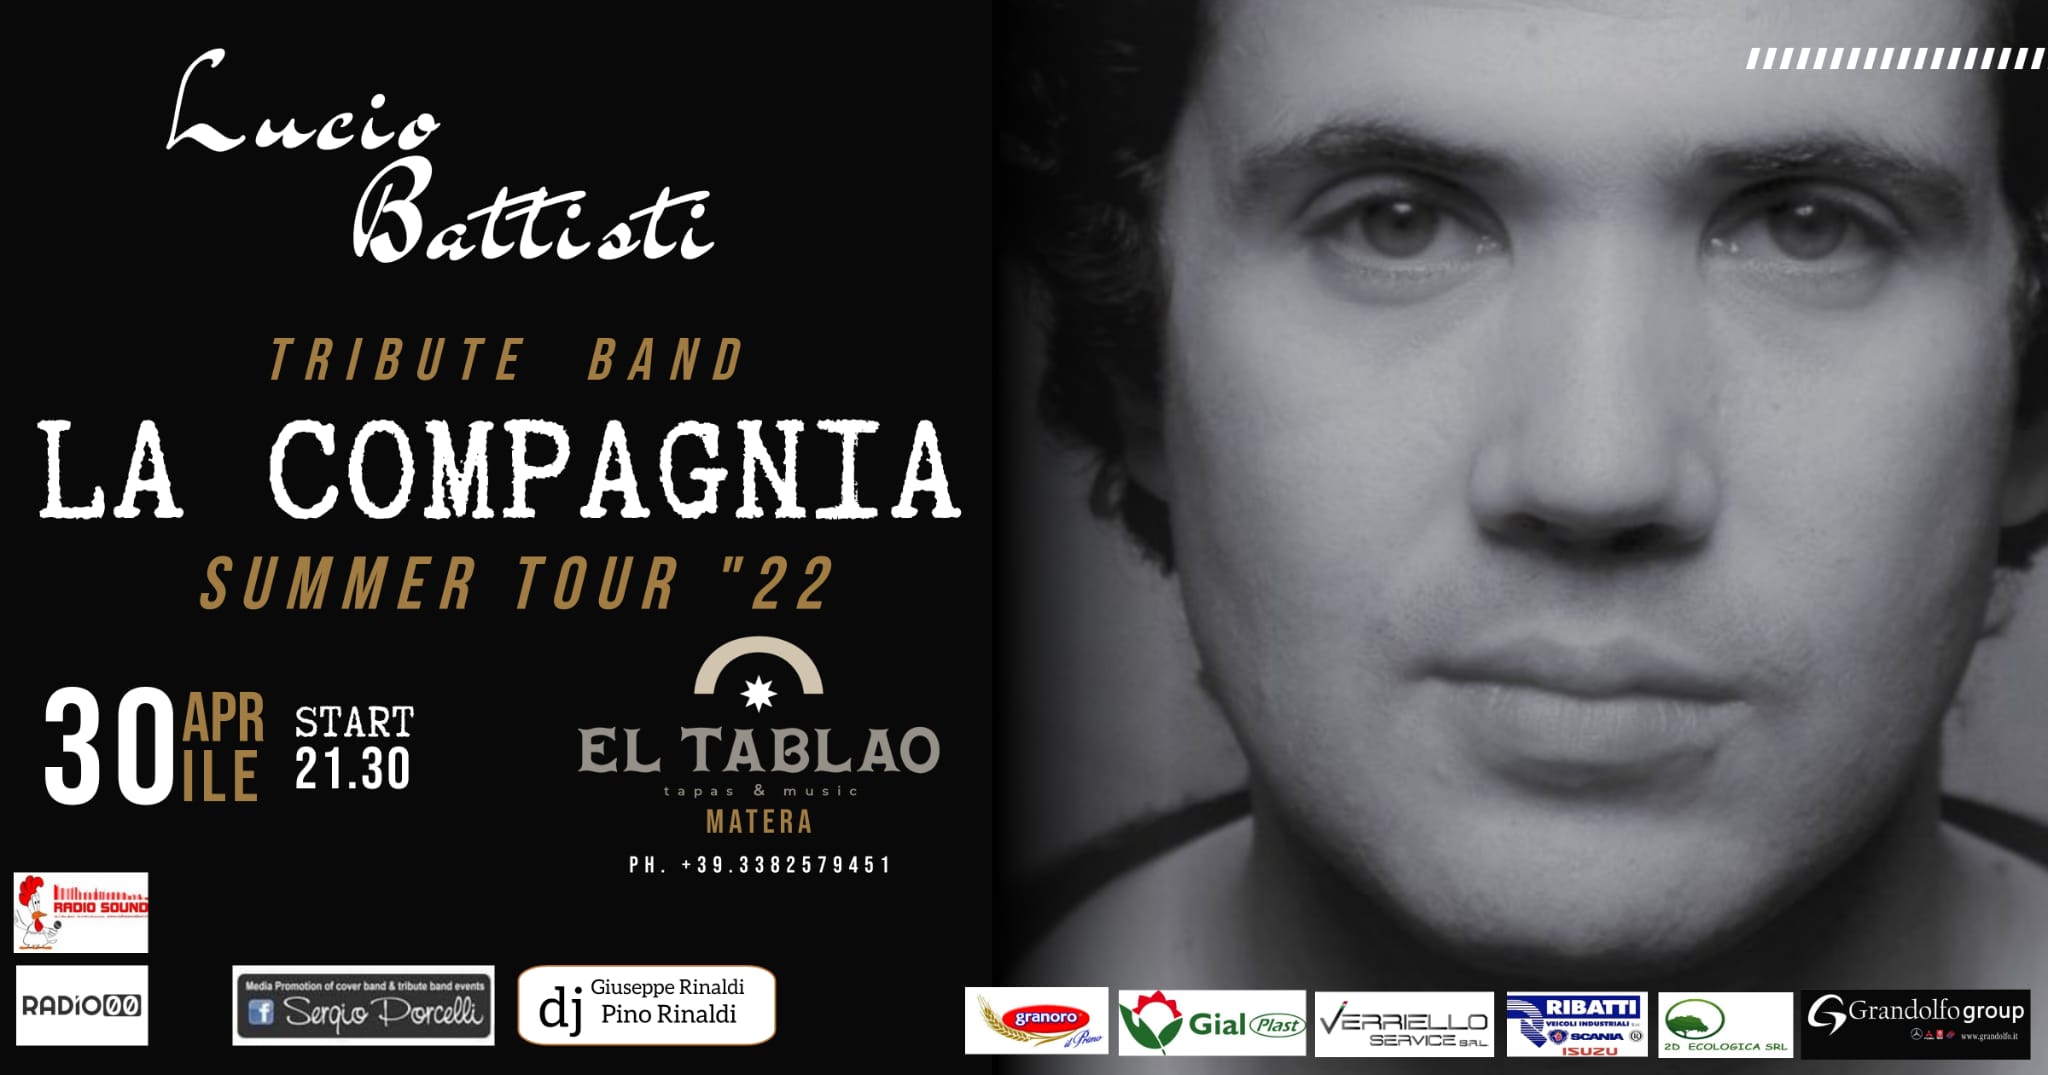 La Compagnia Battisti presenta il nuovo repertorio del tour estivo con l’omaggio a Lucio Battist